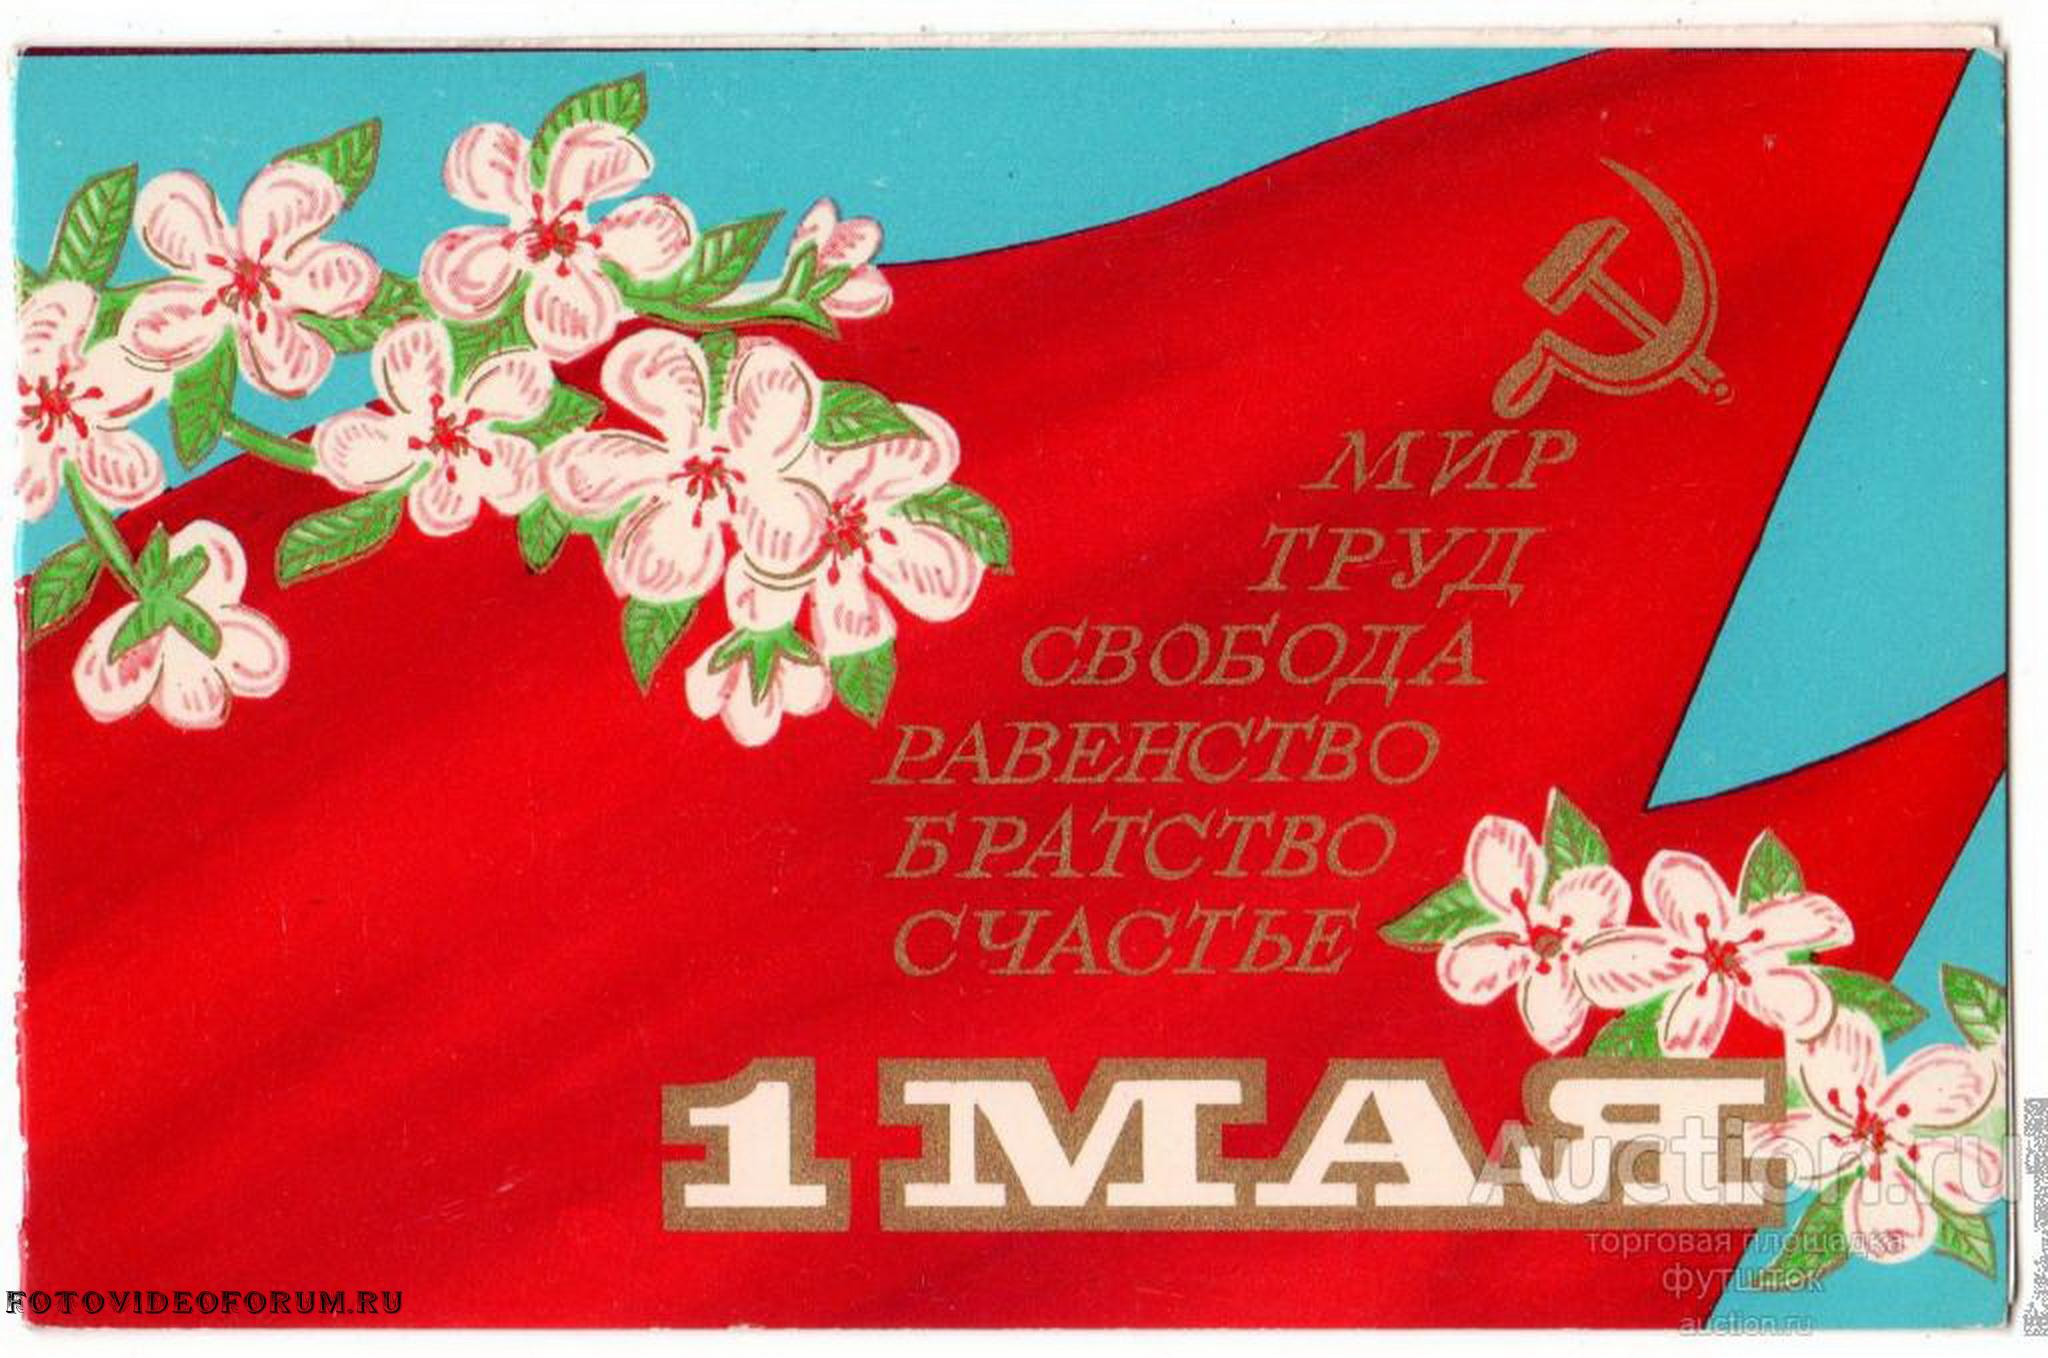 1 мая свобода. Открытки с 1 мая. Советские открытки с 1 мая. Праздник весны и труда СССР. 1 Мая плакат.